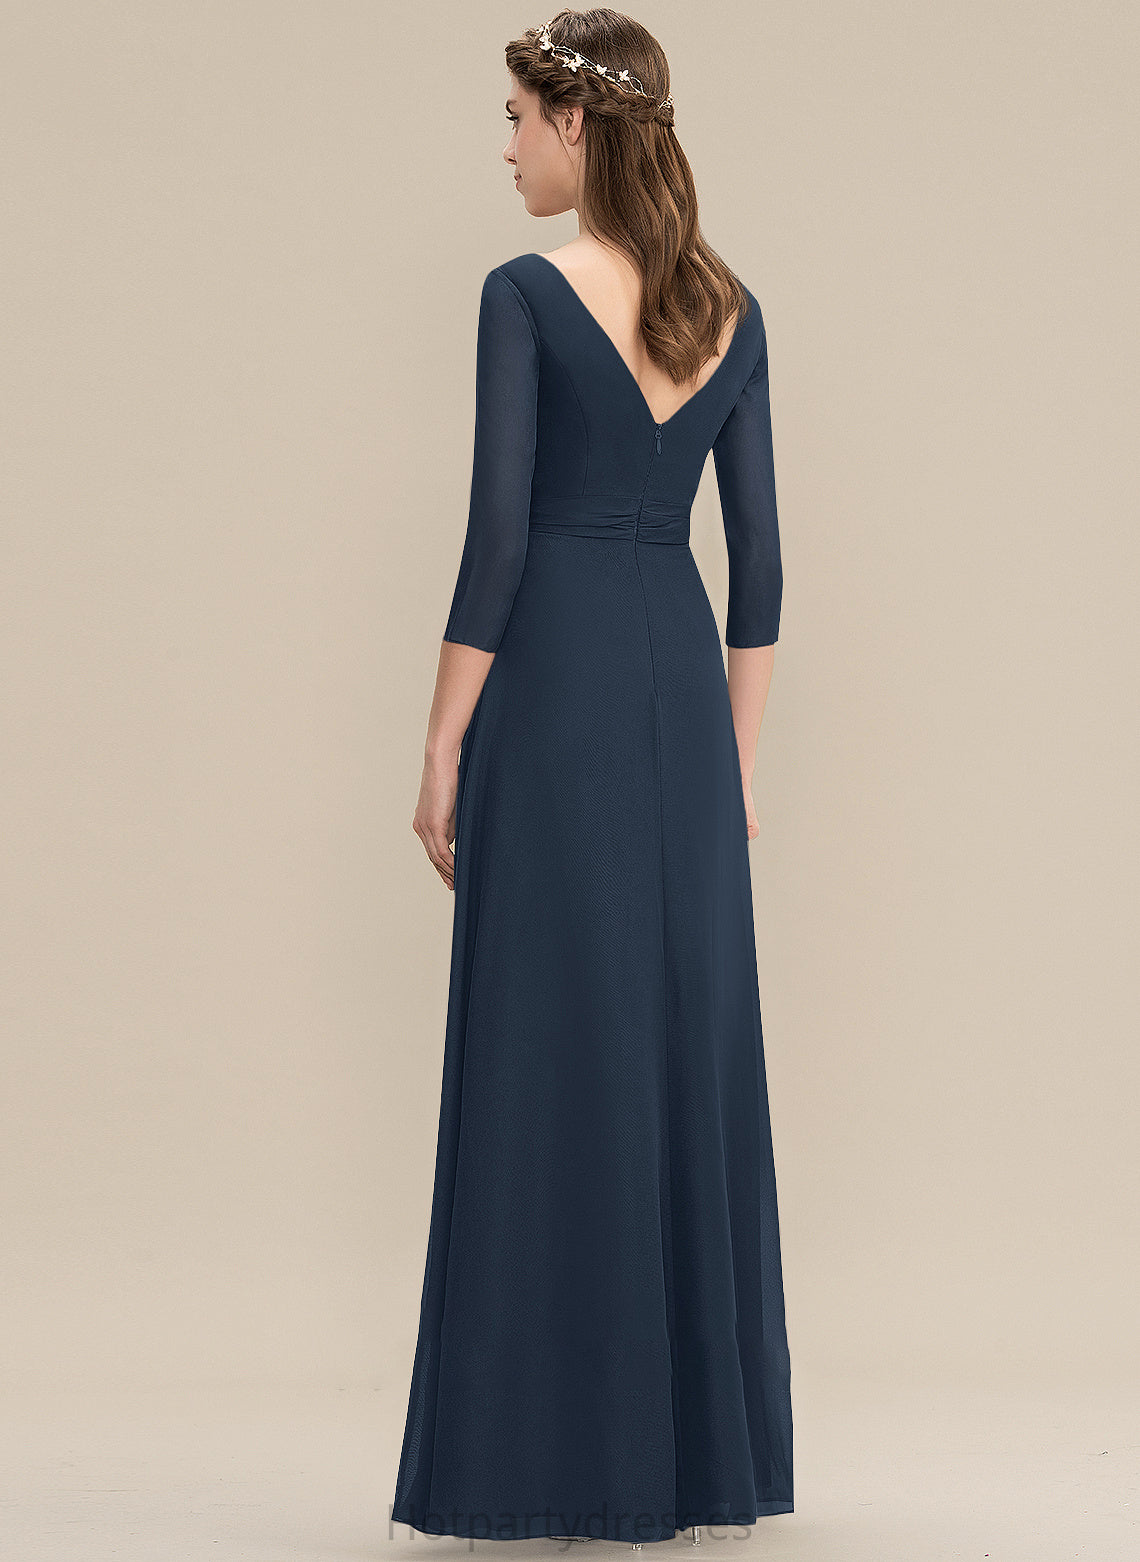 Neckline V-neck A-Line Bow(s) Embellishment Length Floor-Length Ruffle Silhouette Fabric Mariana V-Neck Bridesmaid Dresses